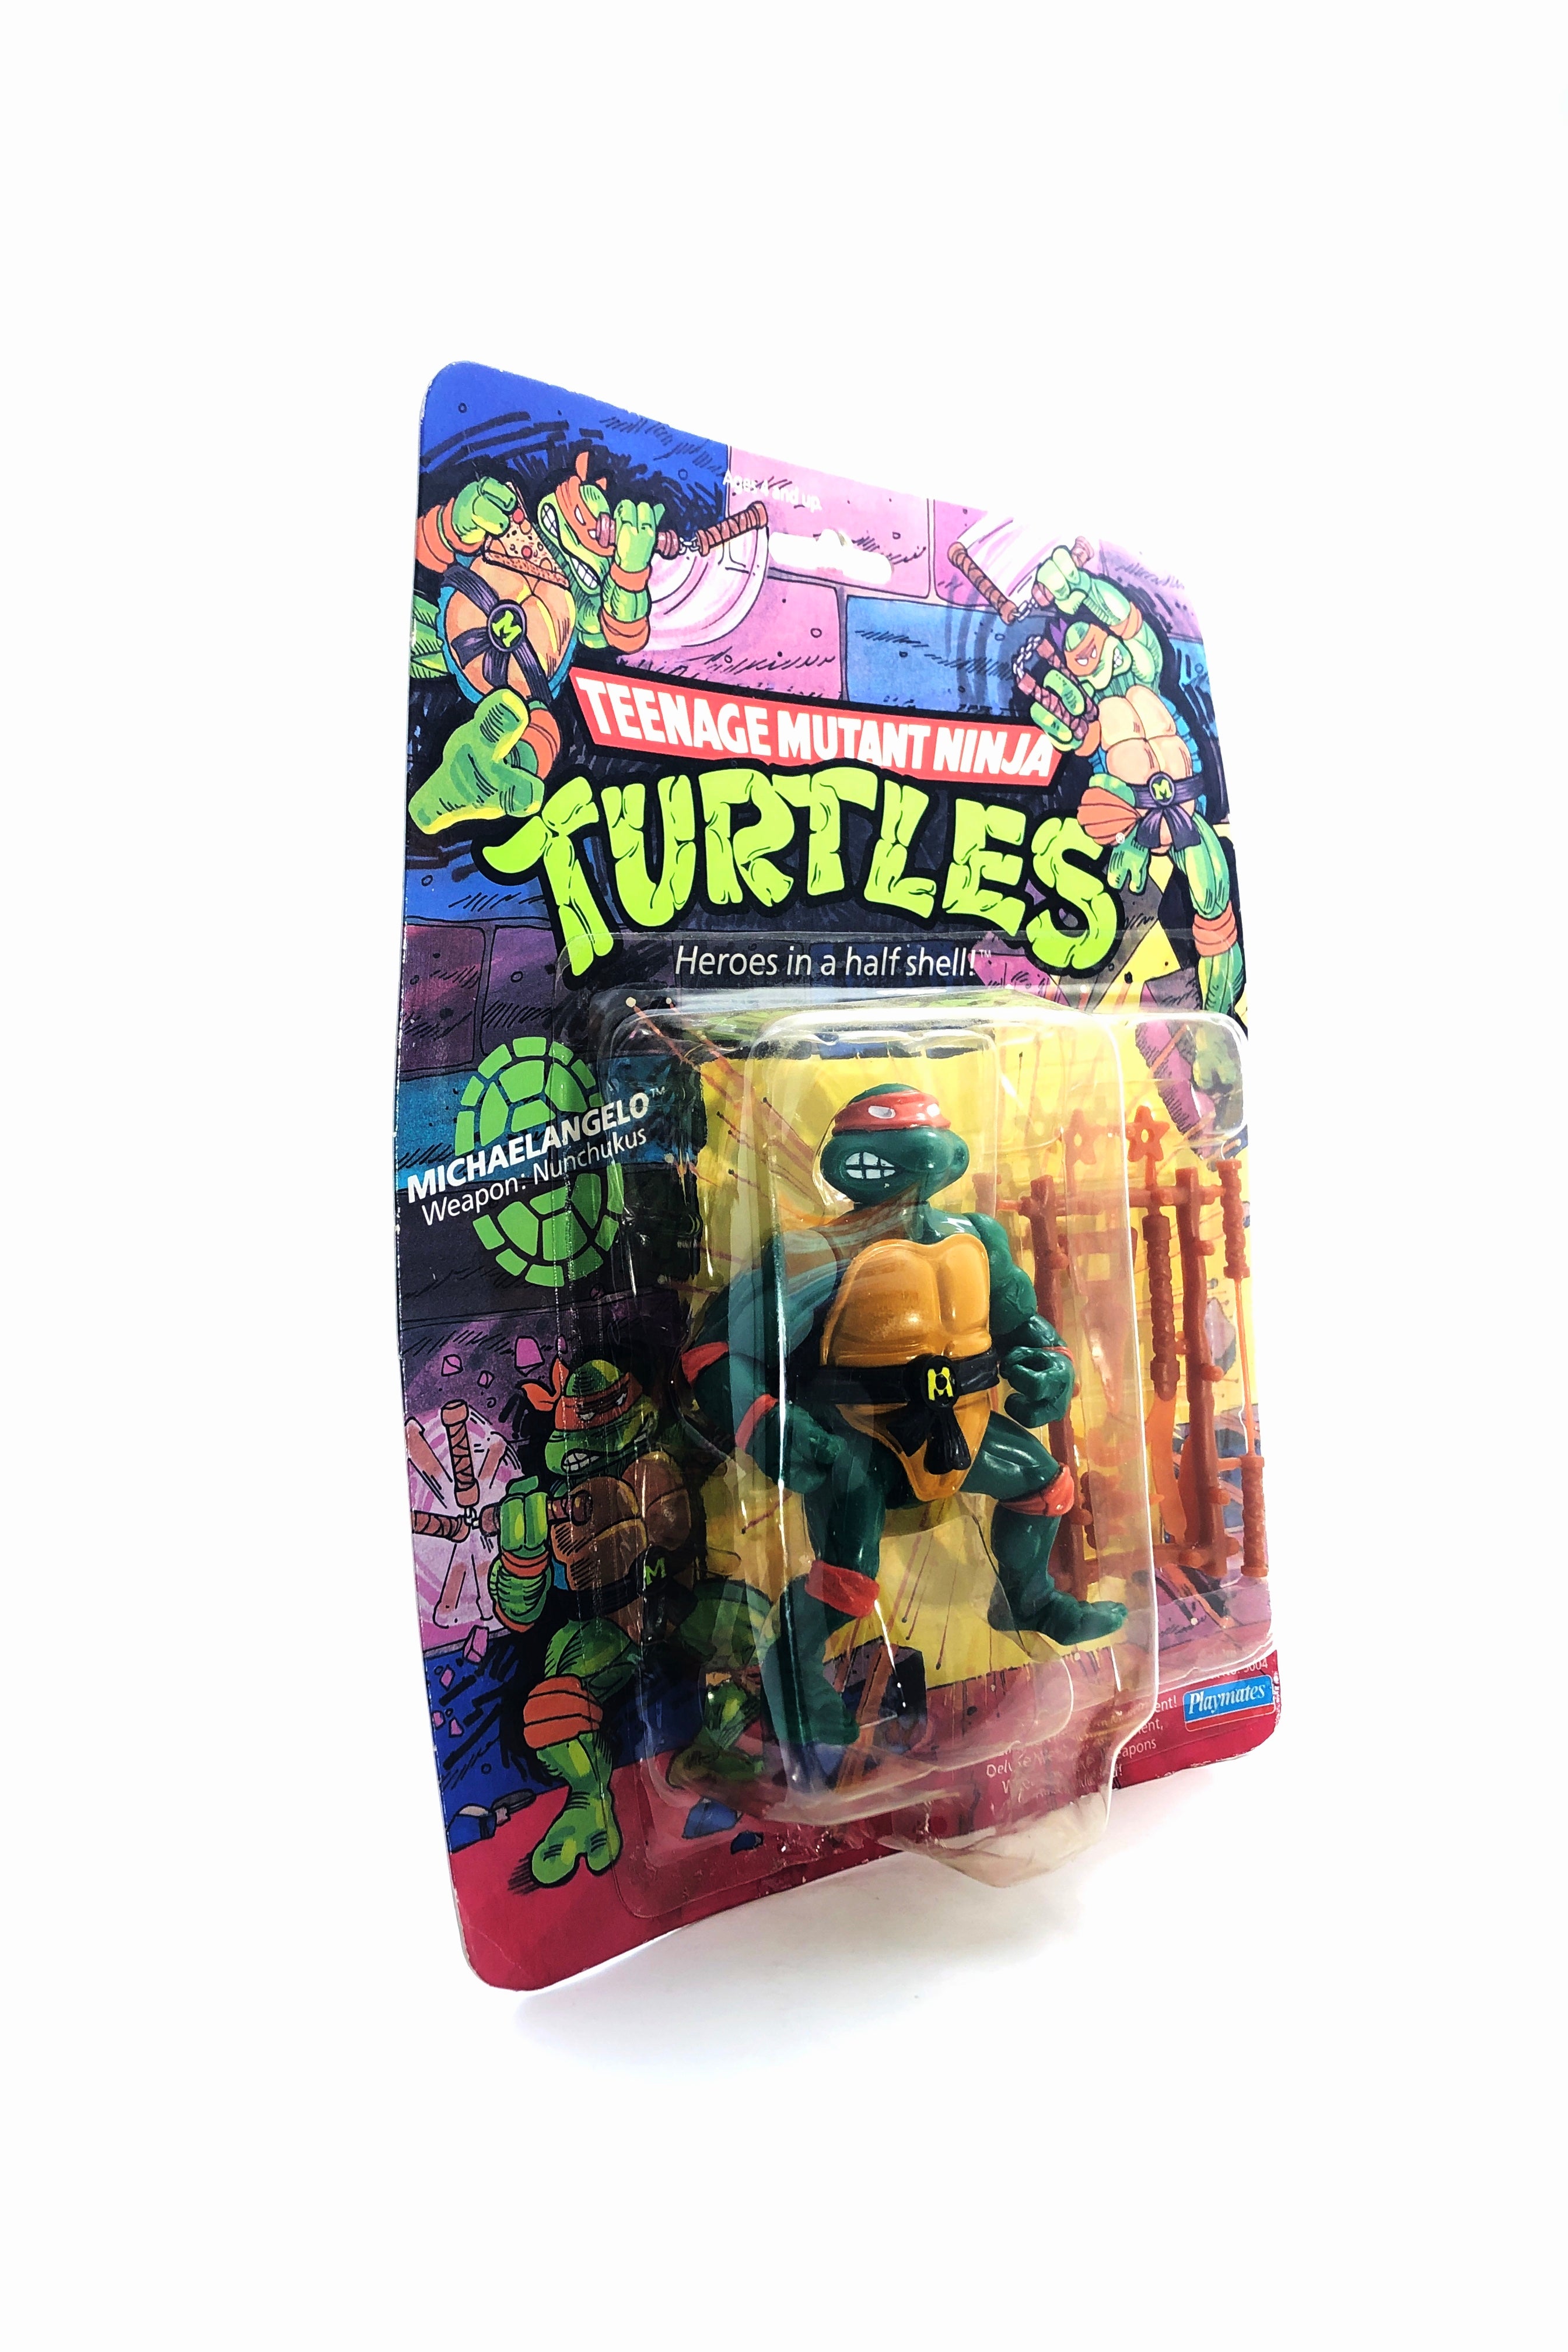 Teenage Mutant Ninja Turtles Michelangelo (Playmates, 1988)